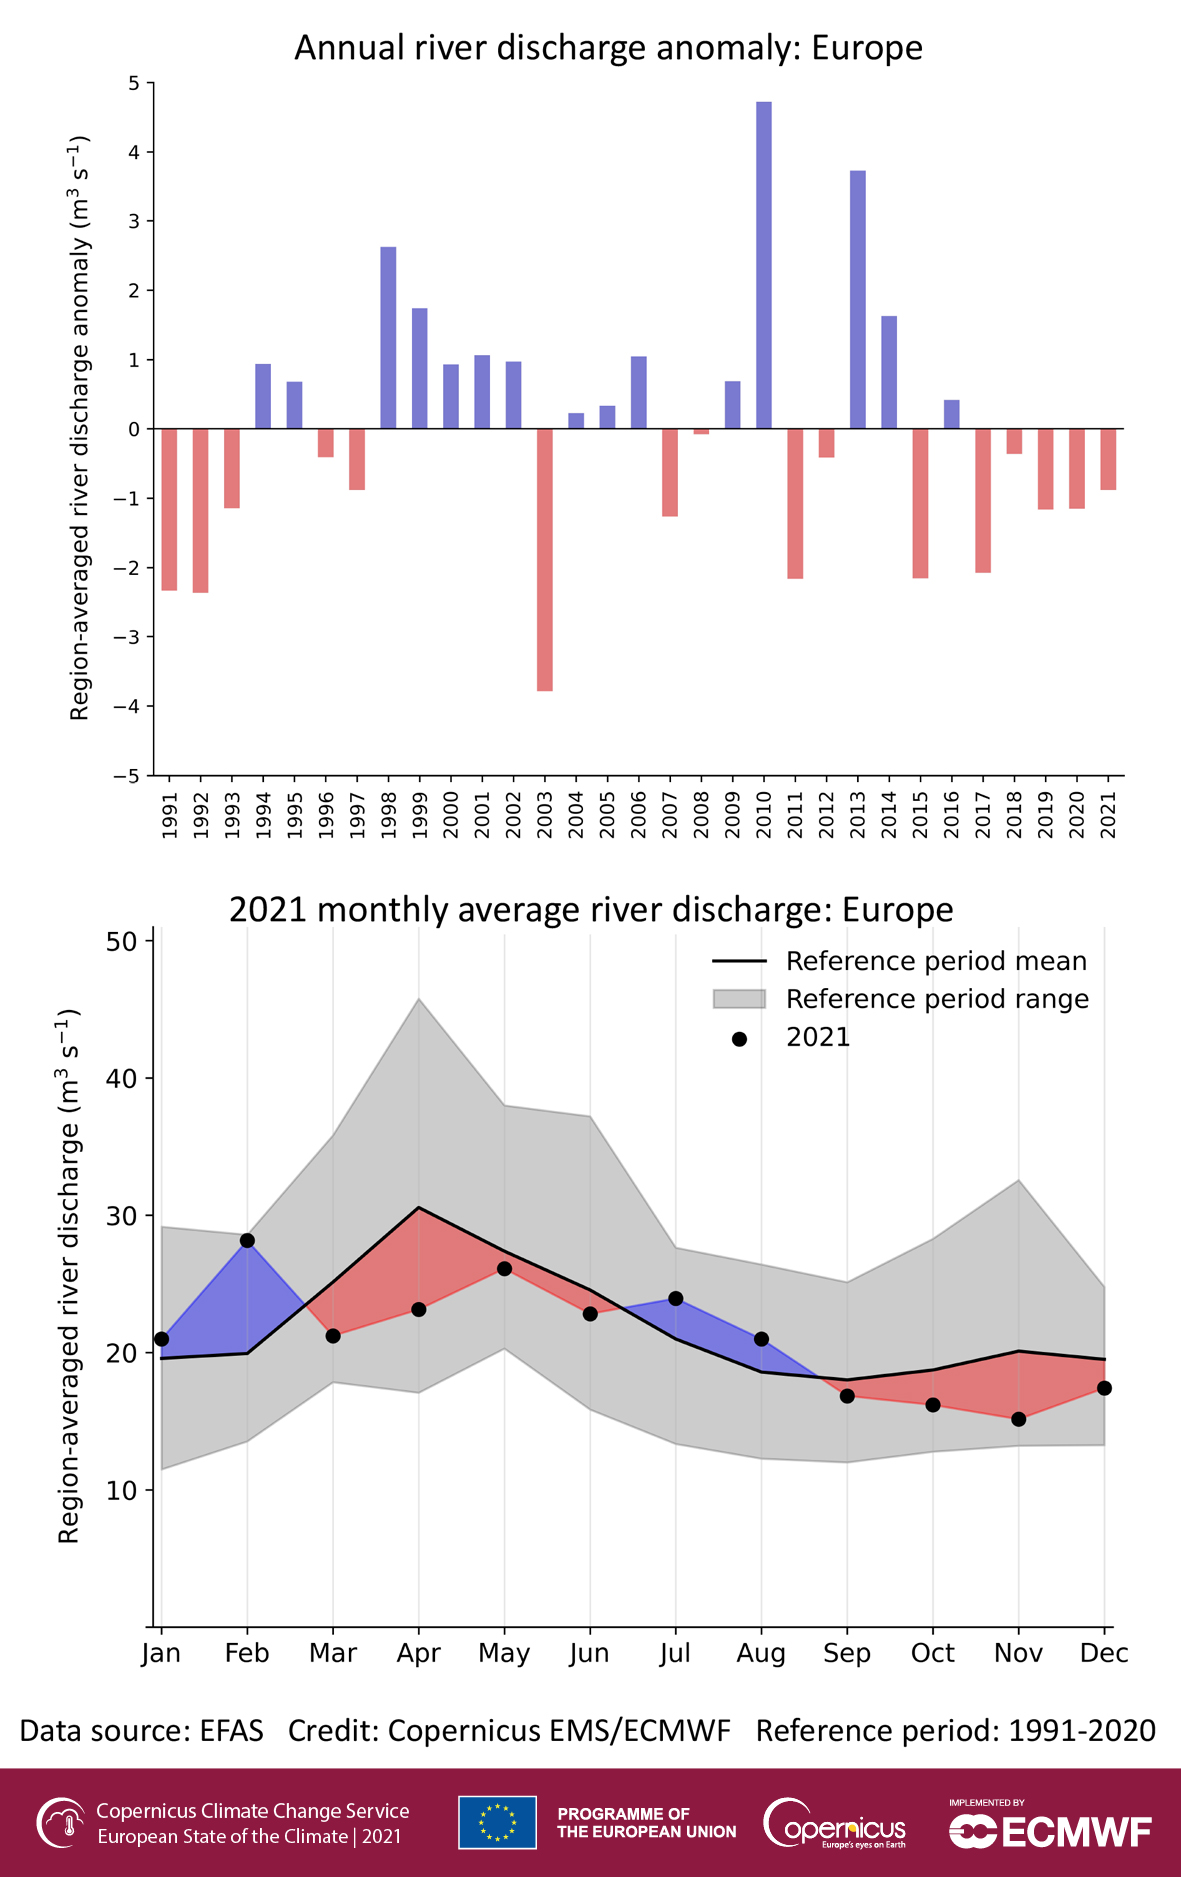 U góry średnie roczne anomalie przepływu rzek w Europie w latach 1991-2021. Na dole średnie miesięczne przepływy rzek Europy: kolorowe obszary wskazują odchylenia- dodatnie (kolor niebieski) i ujemne (kolor czerwony) od średniej dla okresu referencyjnego 1991-2020. Średnie za 2021 rok pokazano czarnymi kropki. Zakres między miesięcznymi minimalnymi i maksymalnymi przepływami średnimi w okresie referencyjnym 1991-2020 pokazano szarym odcieniem. Średnią z okresu referencyjnego obrazuje ciągła czarna linia.